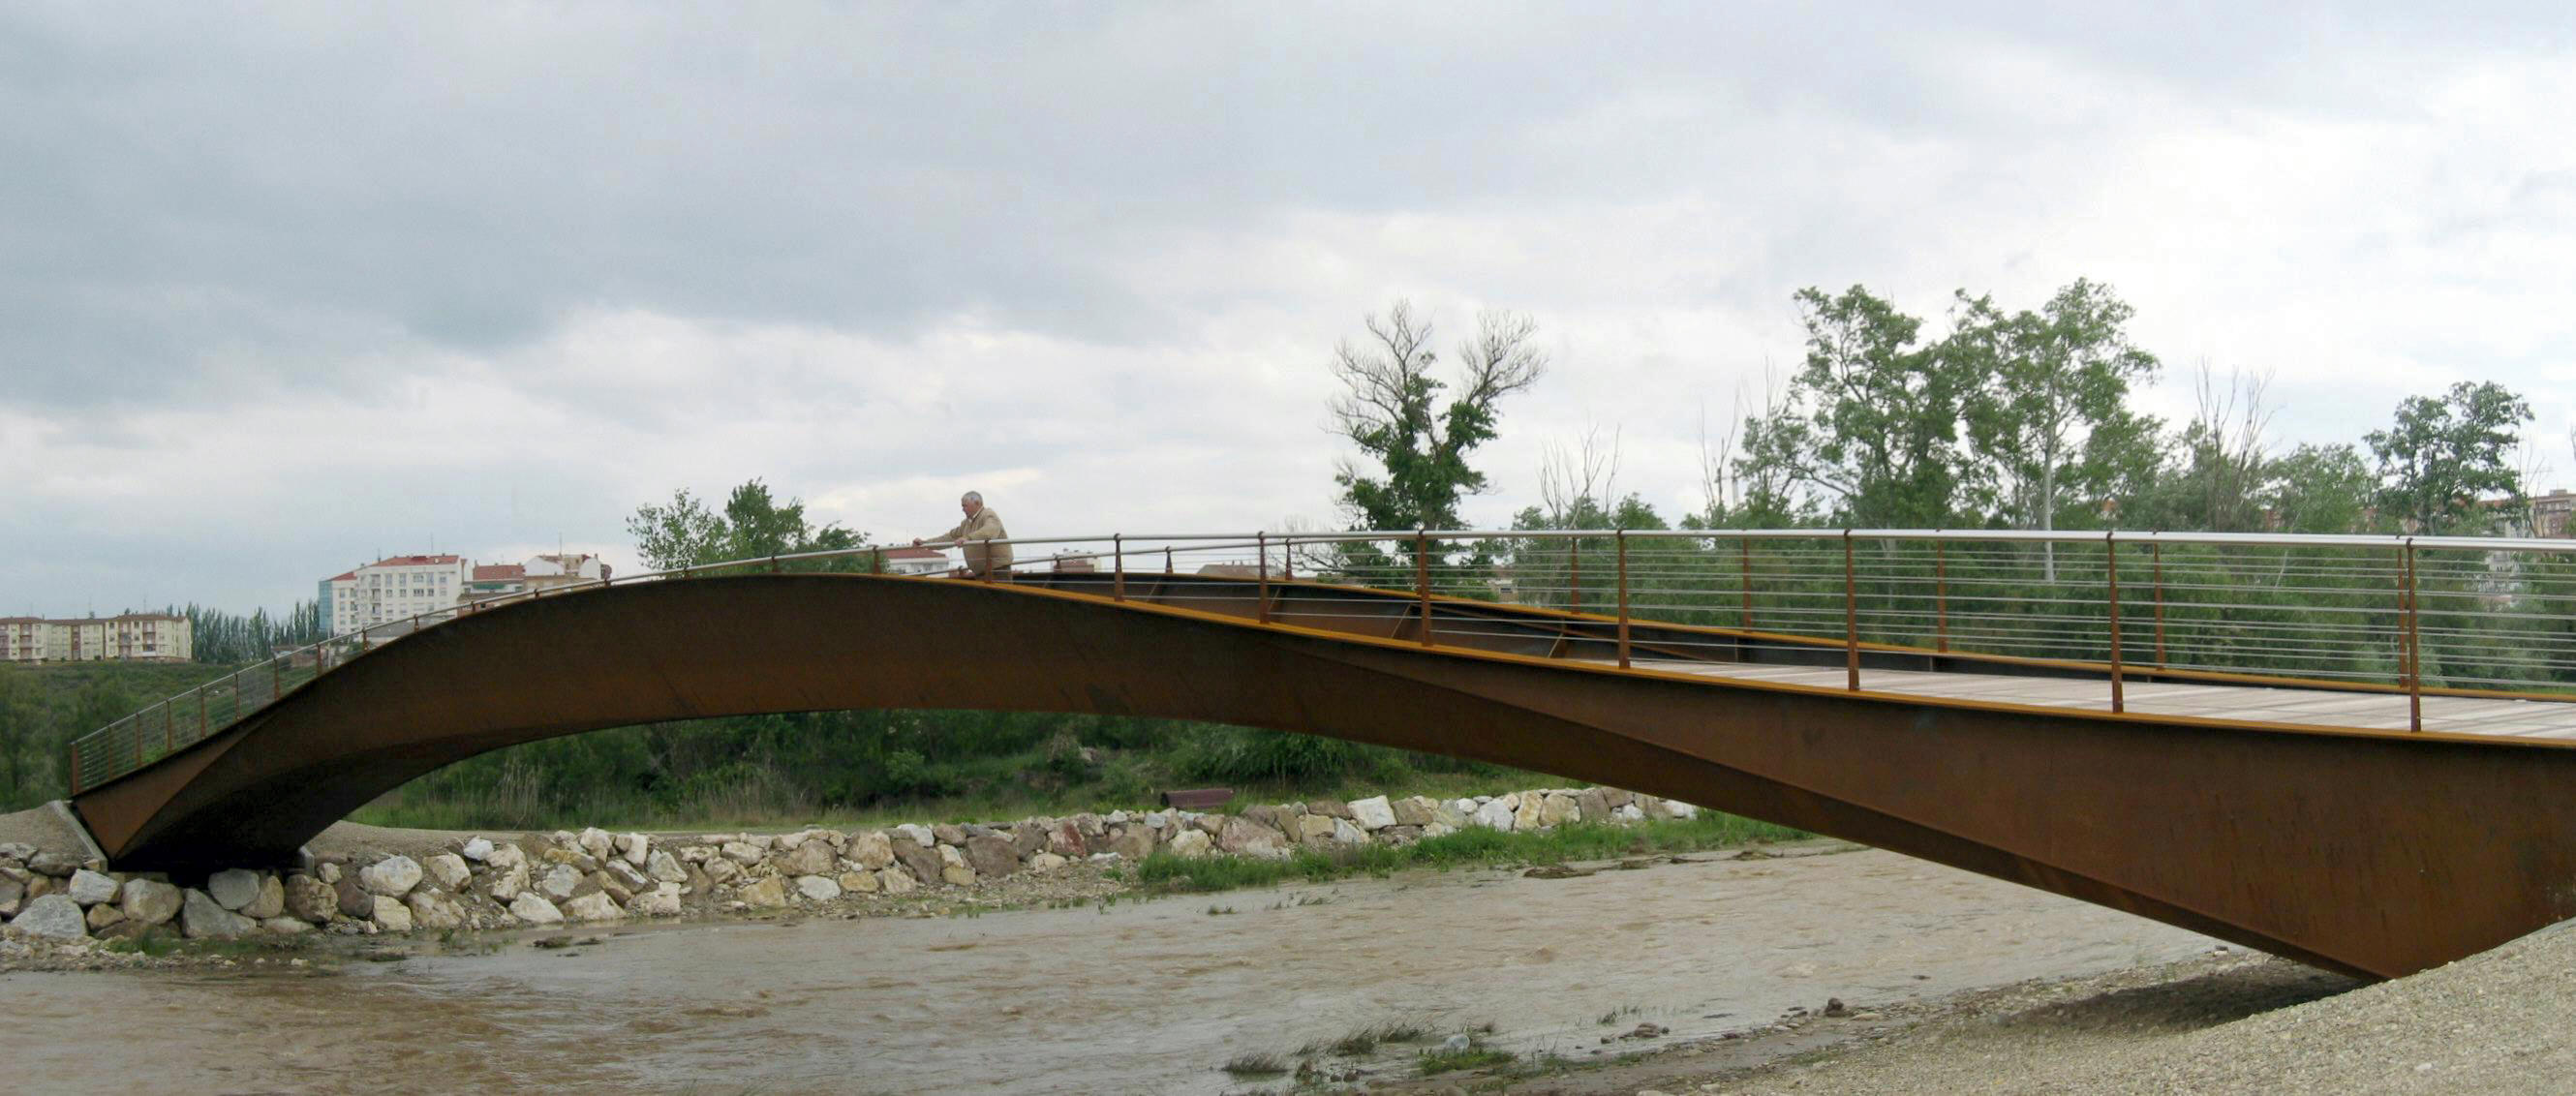 bicontentio footbridge